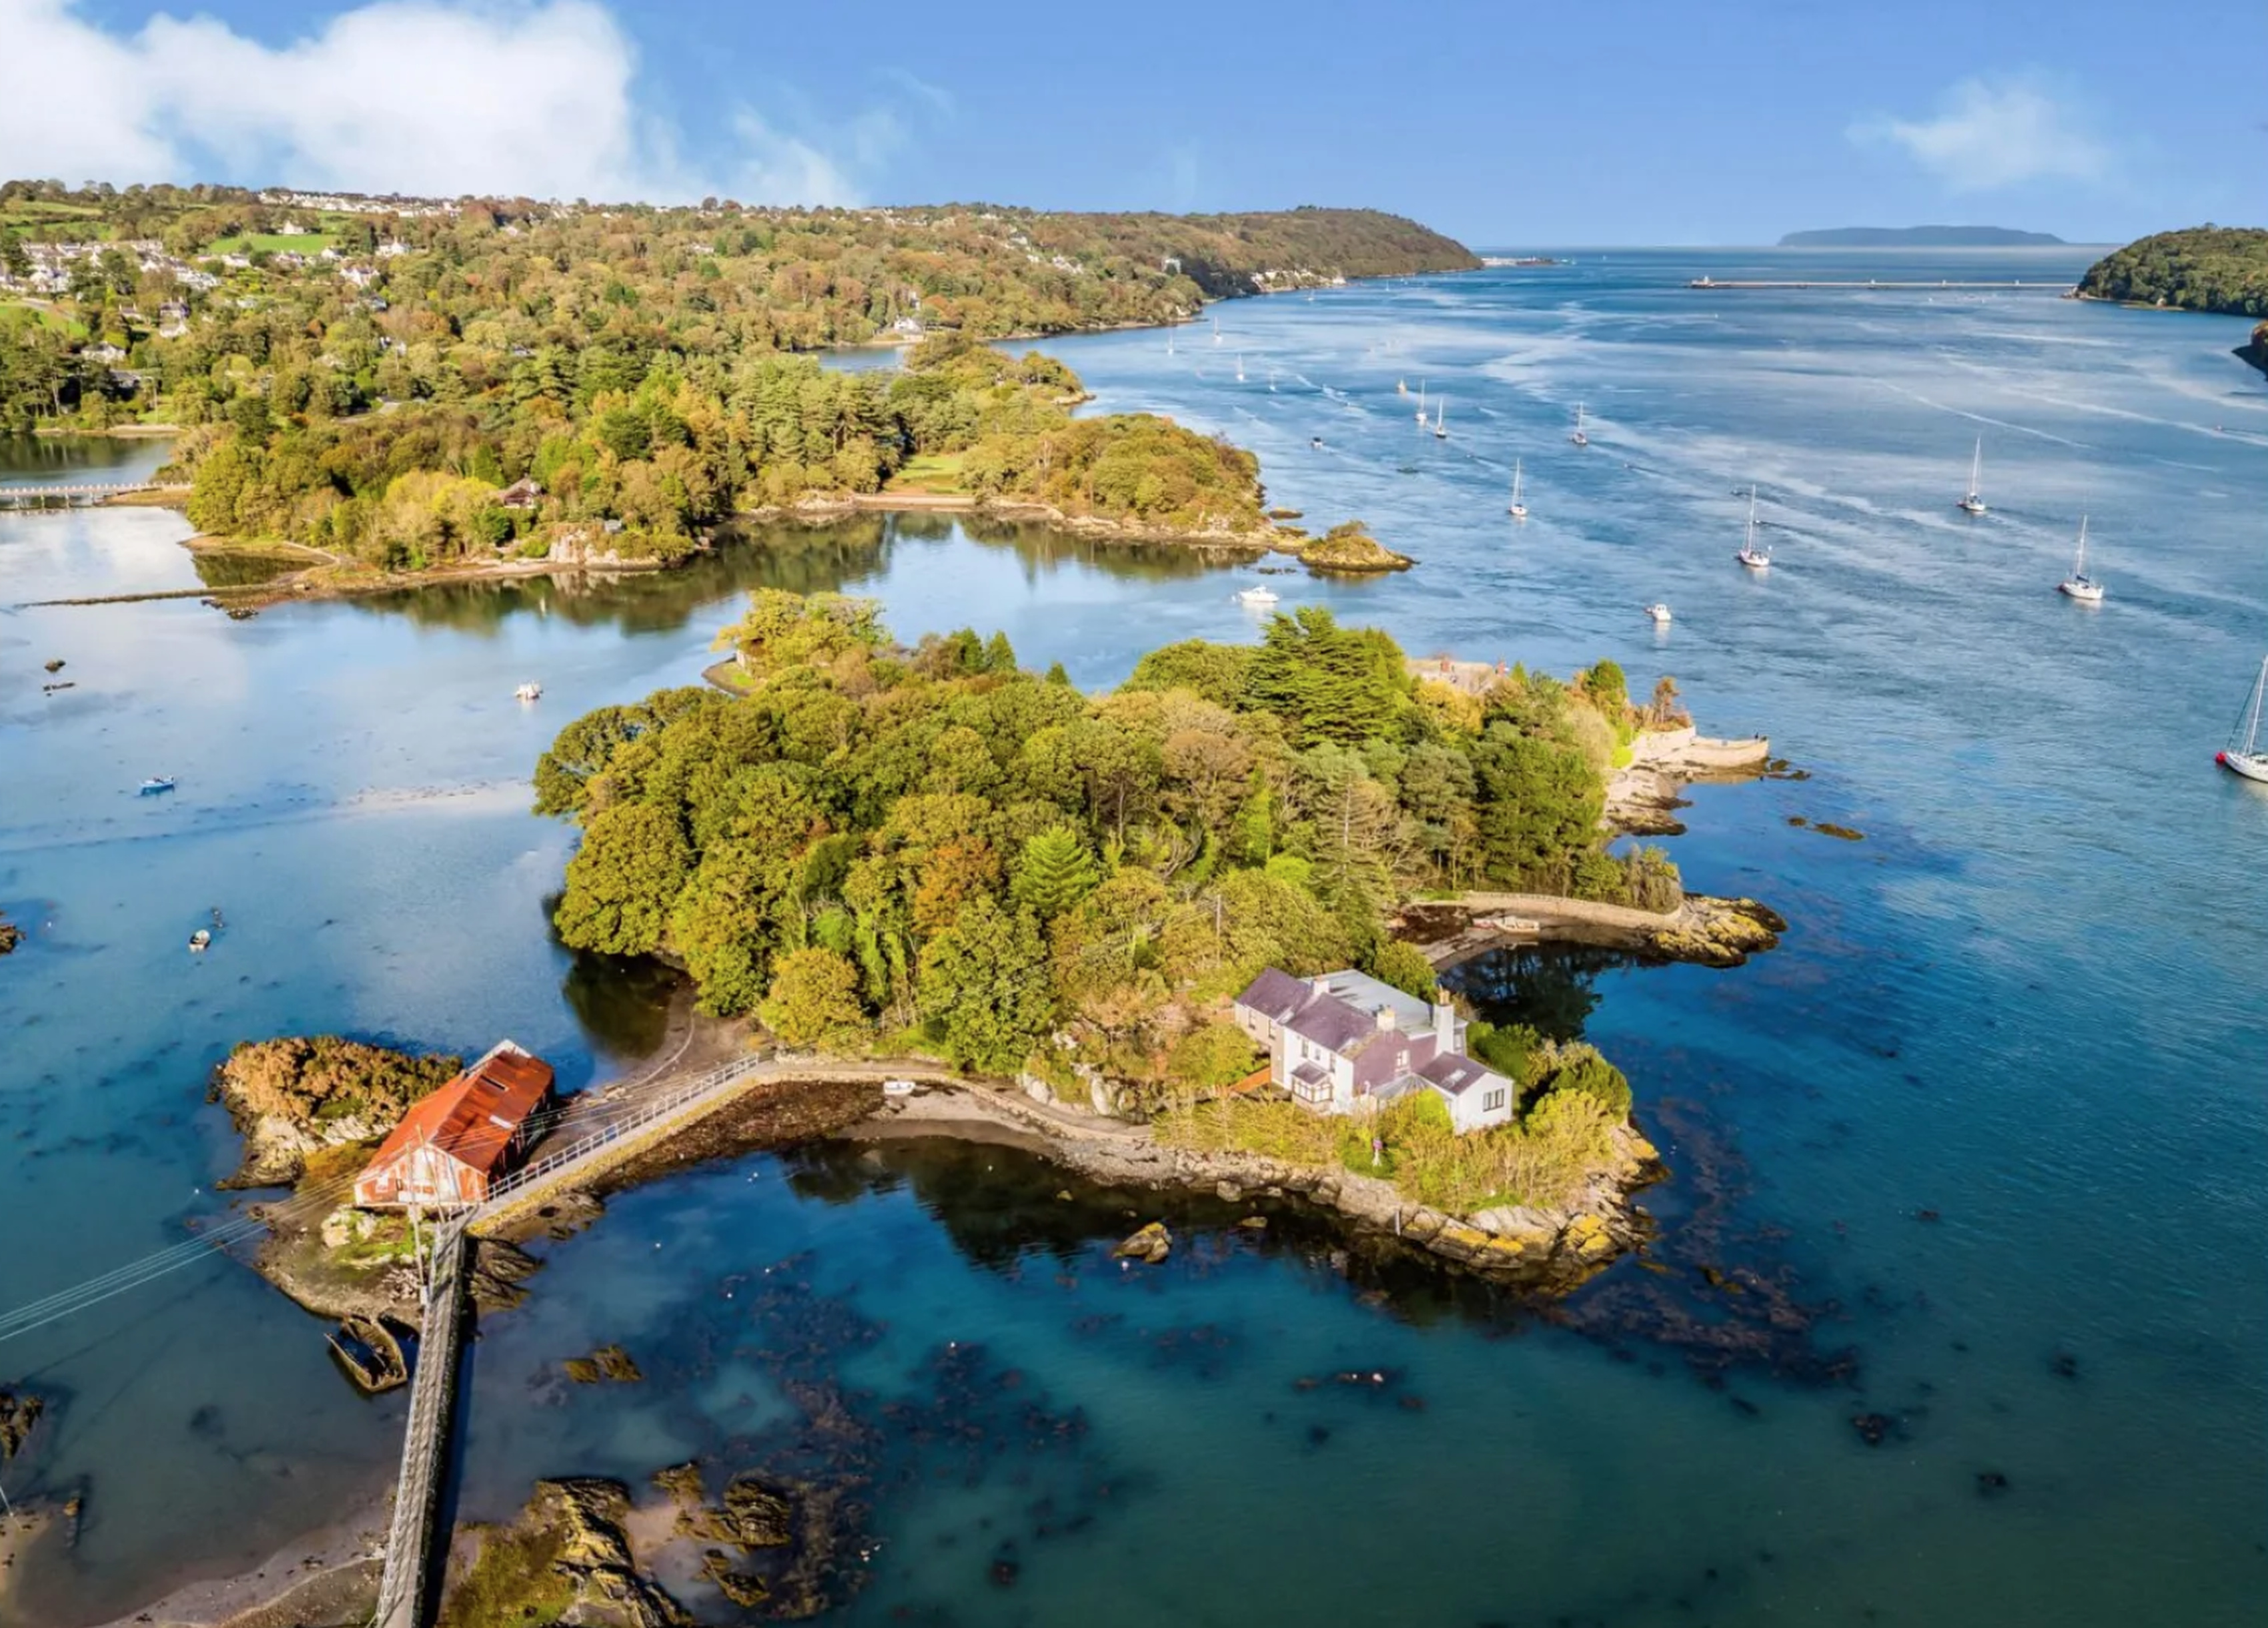 Ein Teil der Insel wurde 2019 von der Bangor University für 1 Million Pfund zum Verkauf angeboten